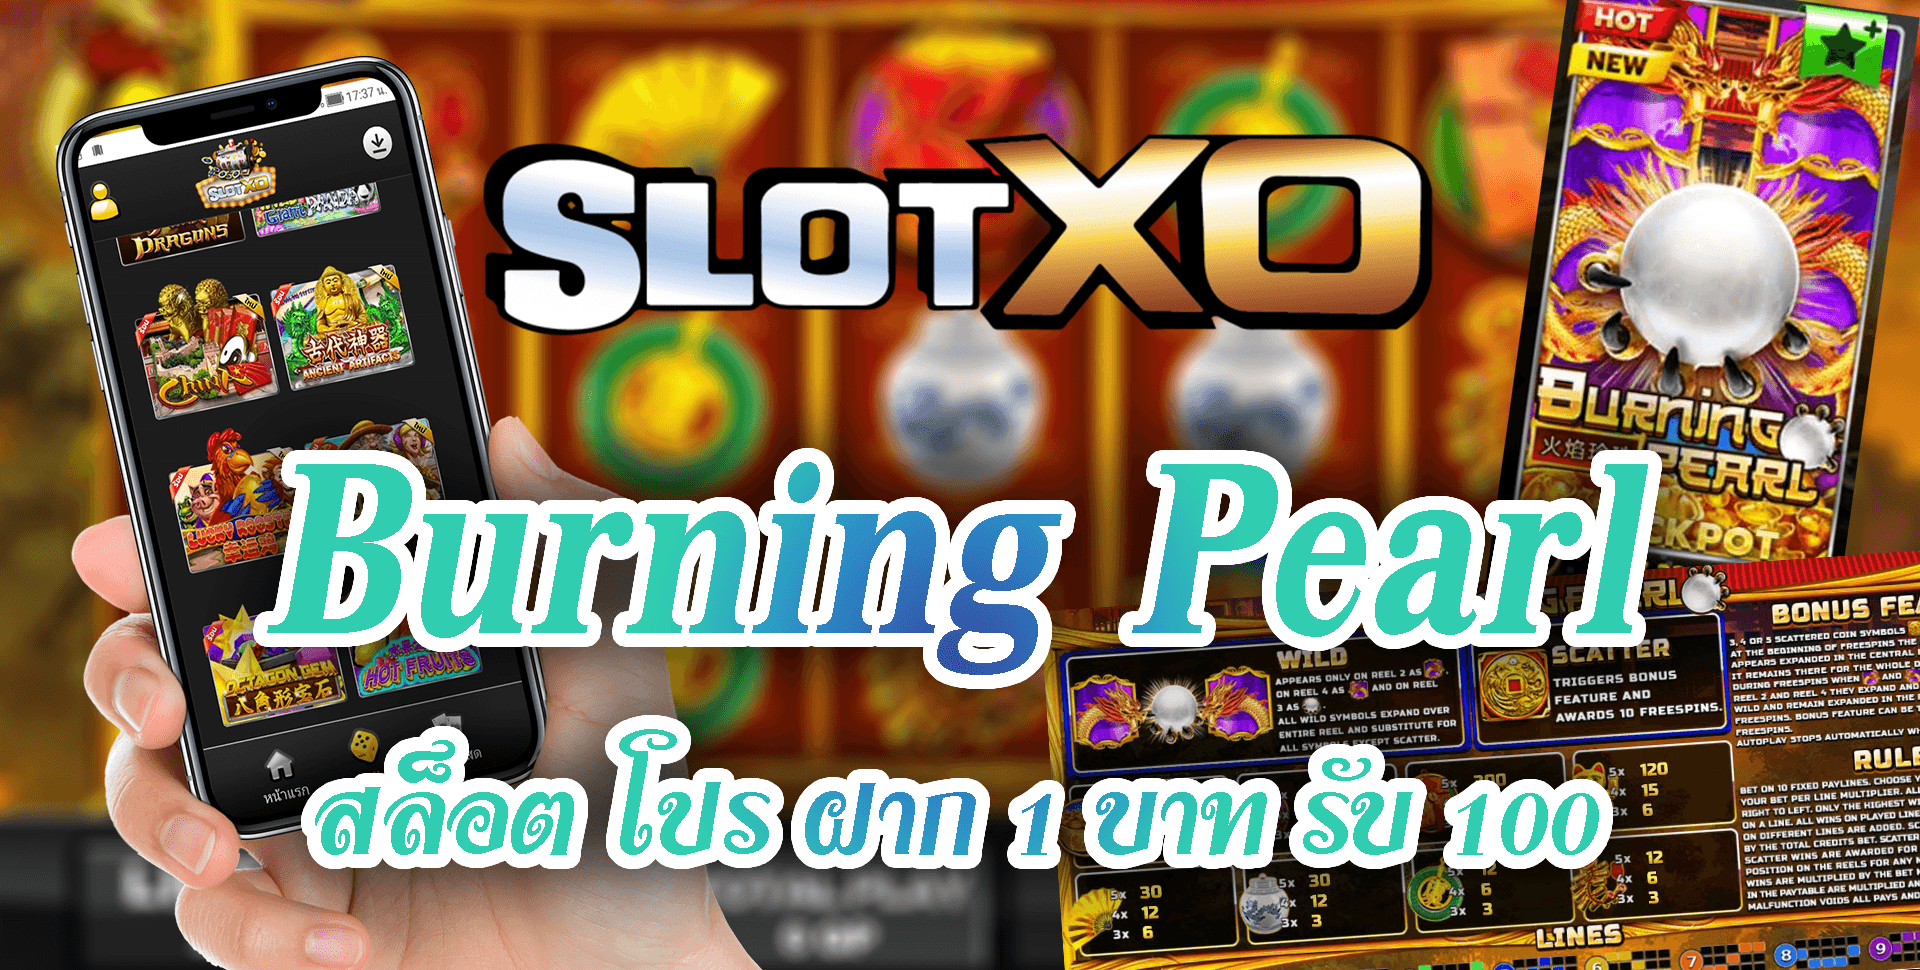 Slot xo-Burning-Pearl-5